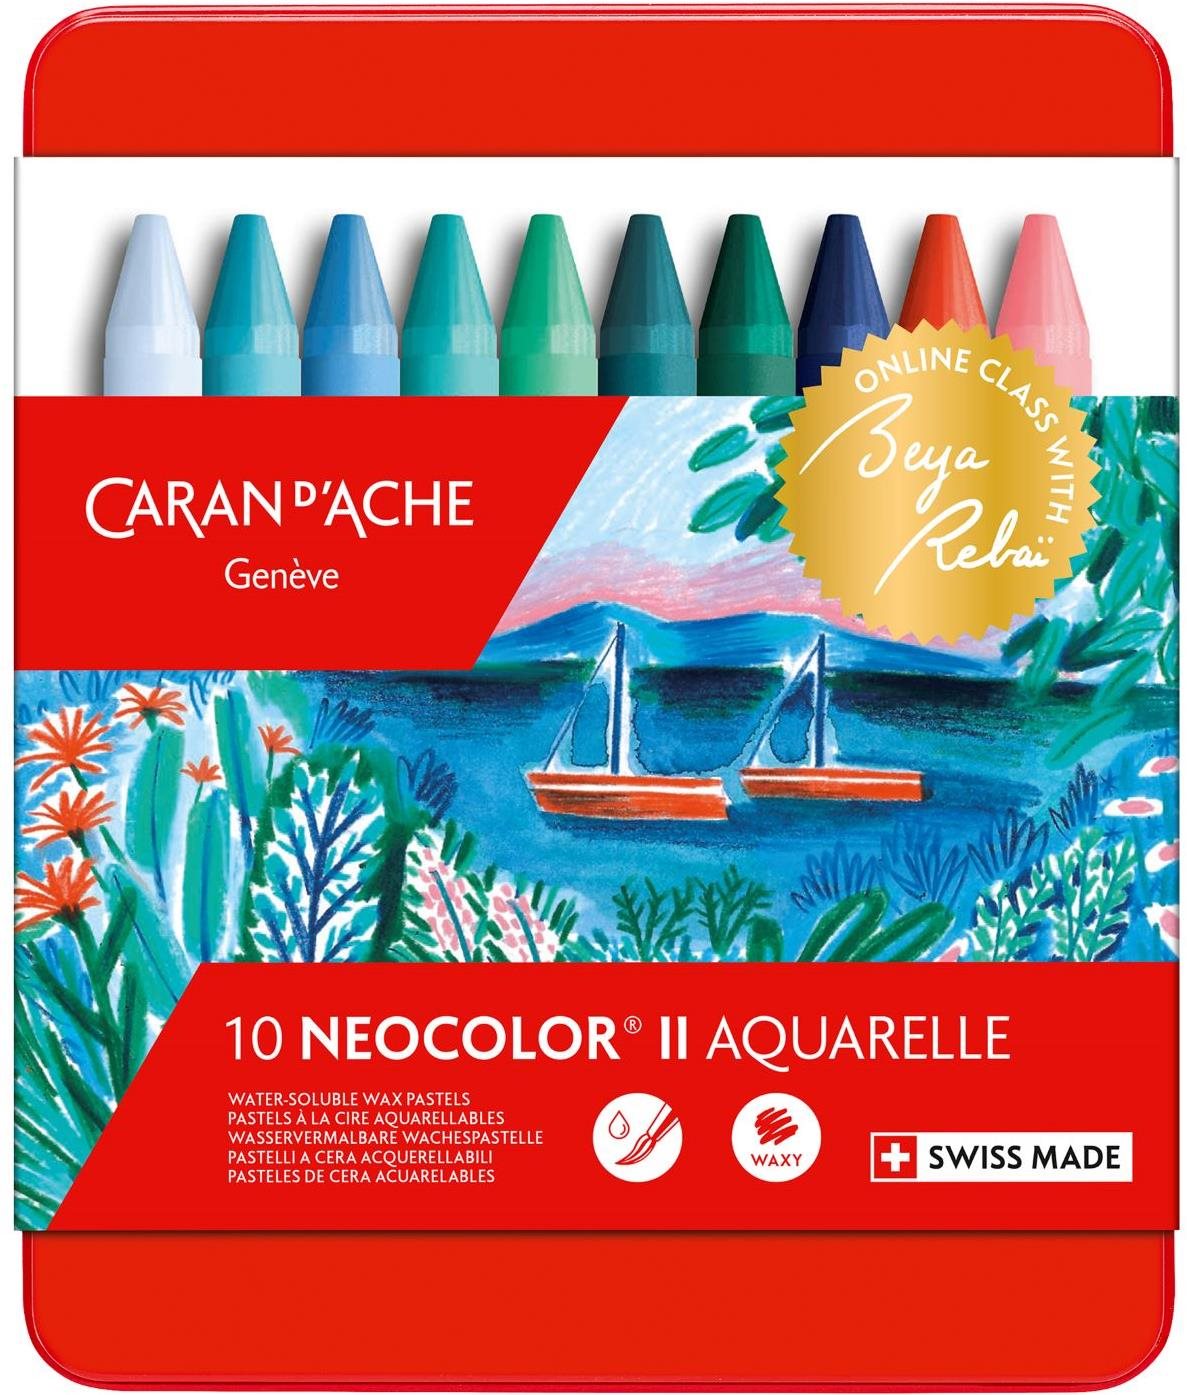 CARAN D'ACHE Neocolor II edice Beya Rebai 10 studených barev v kovovém boxu